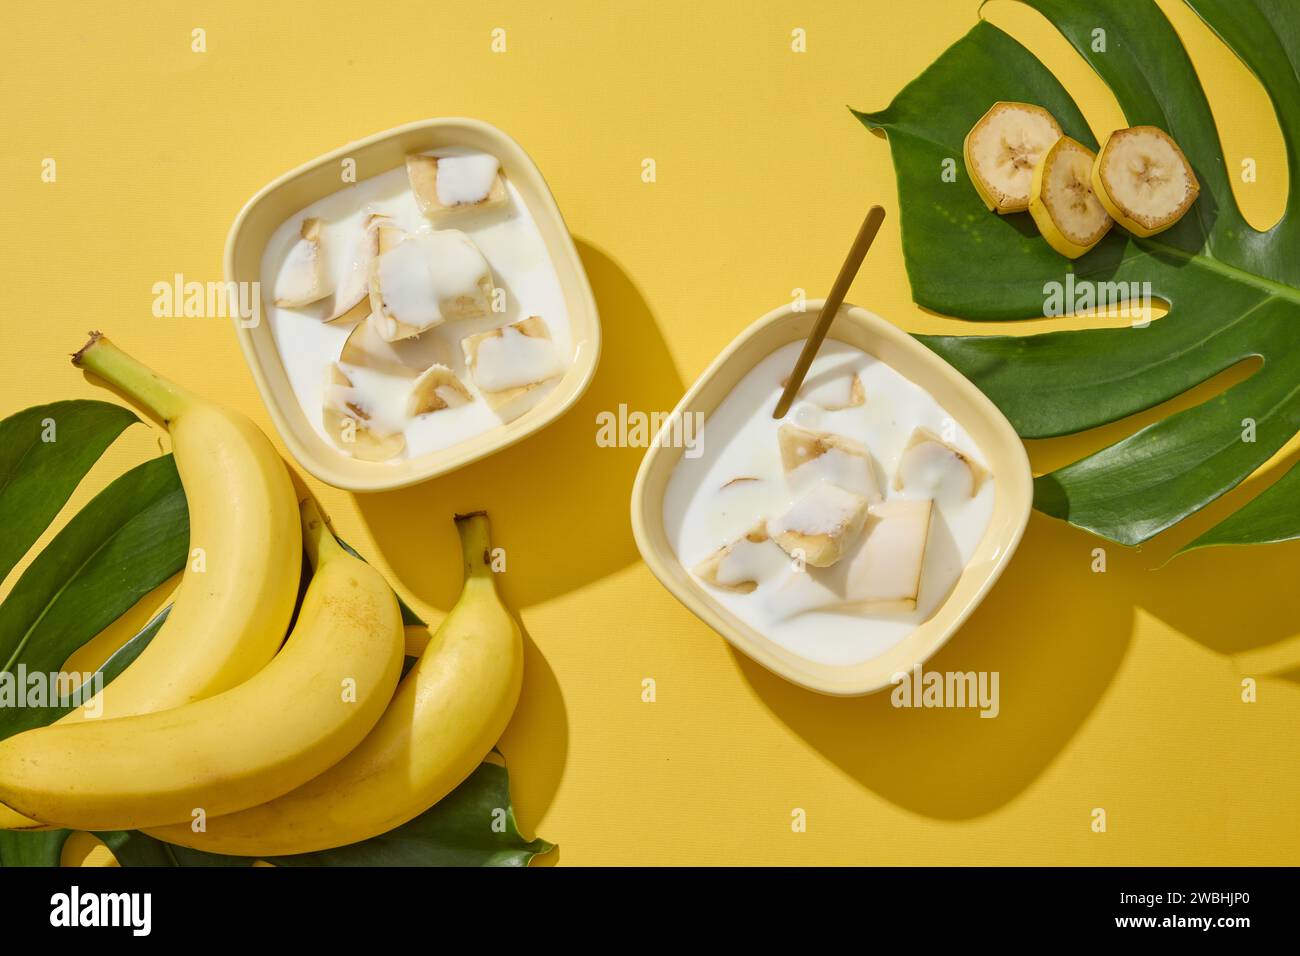 Vue de dessus de quelques bananes et bols de yaourt et tranches de banane. Fond jaune avec des feuilles tropicales. La banane (Musaceae) est un excellent hydratant naturel Banque D'Images